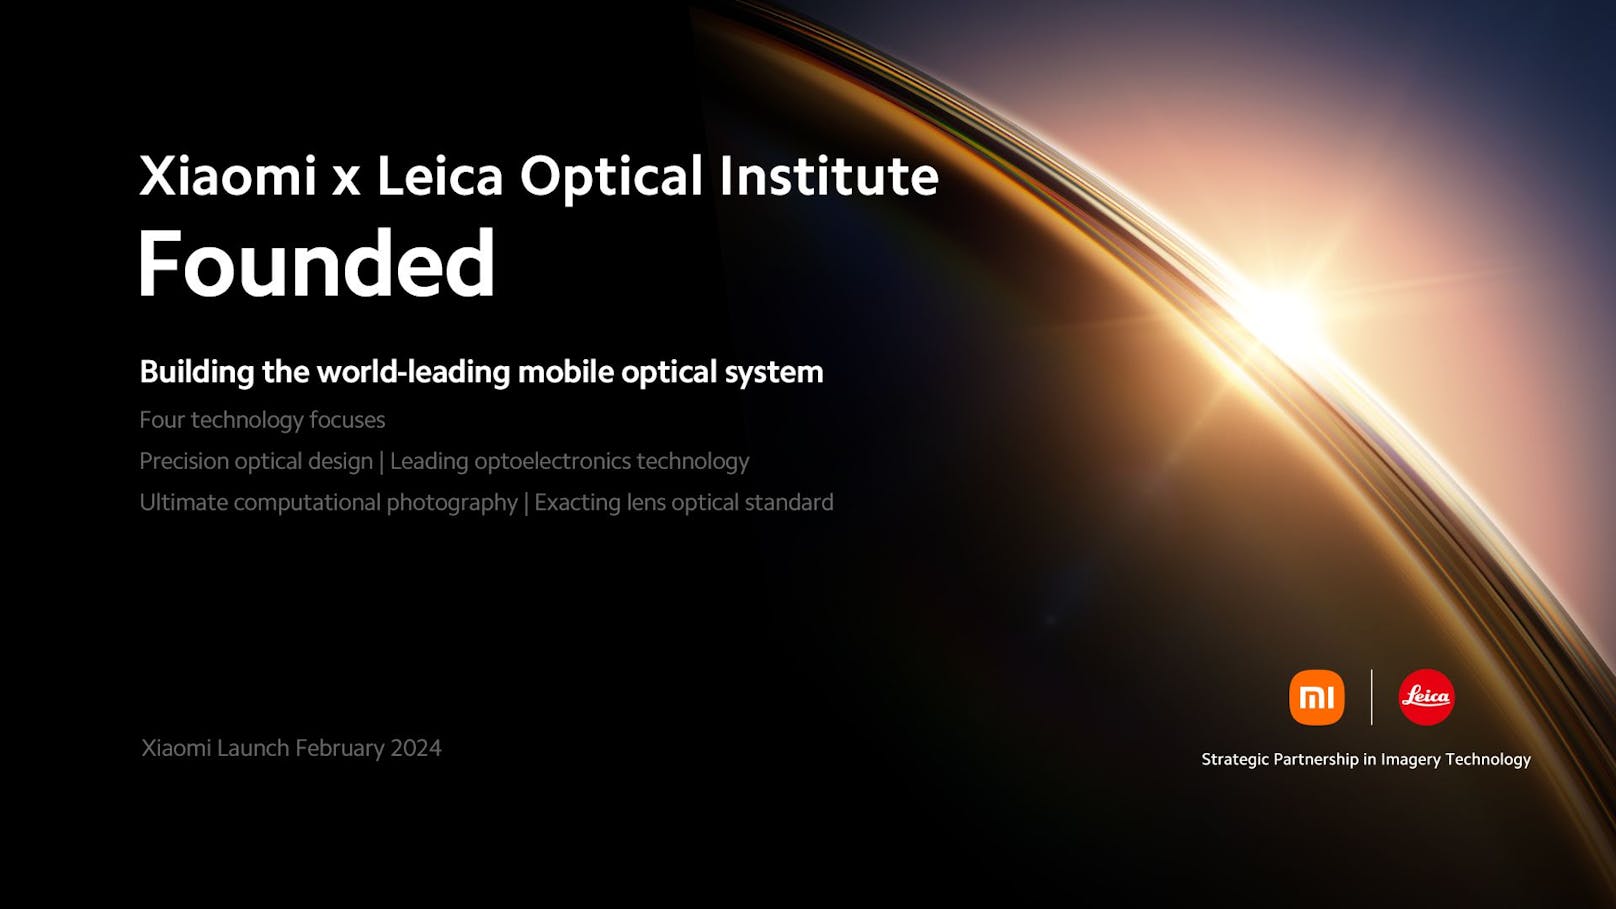 Xiaomi und Leica stellen das Xiaomi x Leica Optical Institute vor, das "bahnbrechende Fortschritte in der mobilen Bildgebung ermöglicht".